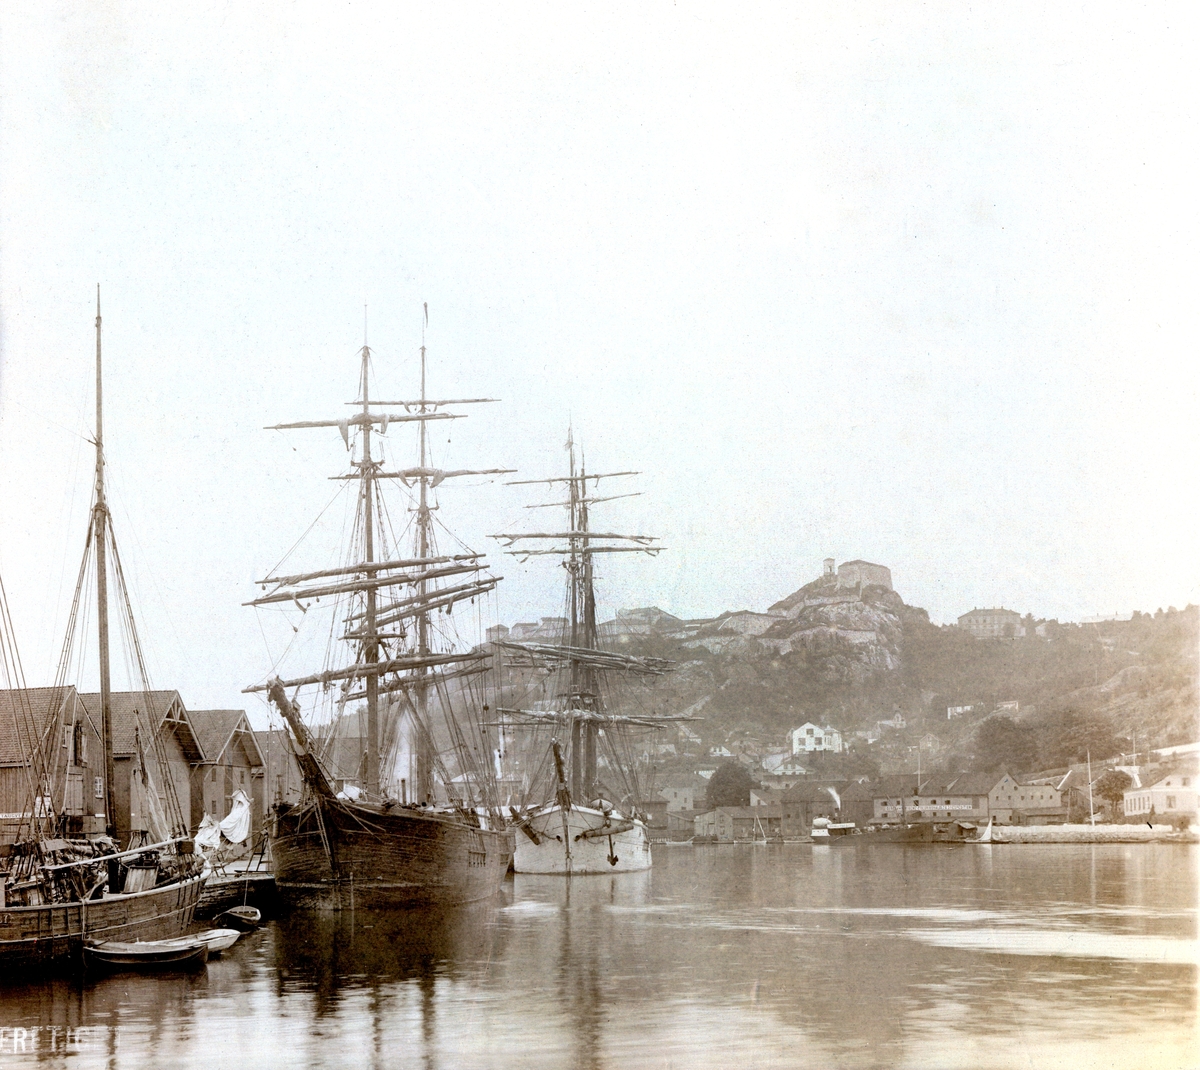 Skuteportrett, fra havnen i Halden, fotografert i forbindelse med Telemarkens Linjebataljon Fredriksten festning, 1905. Fredriksten festning sees i bakgrunnen.